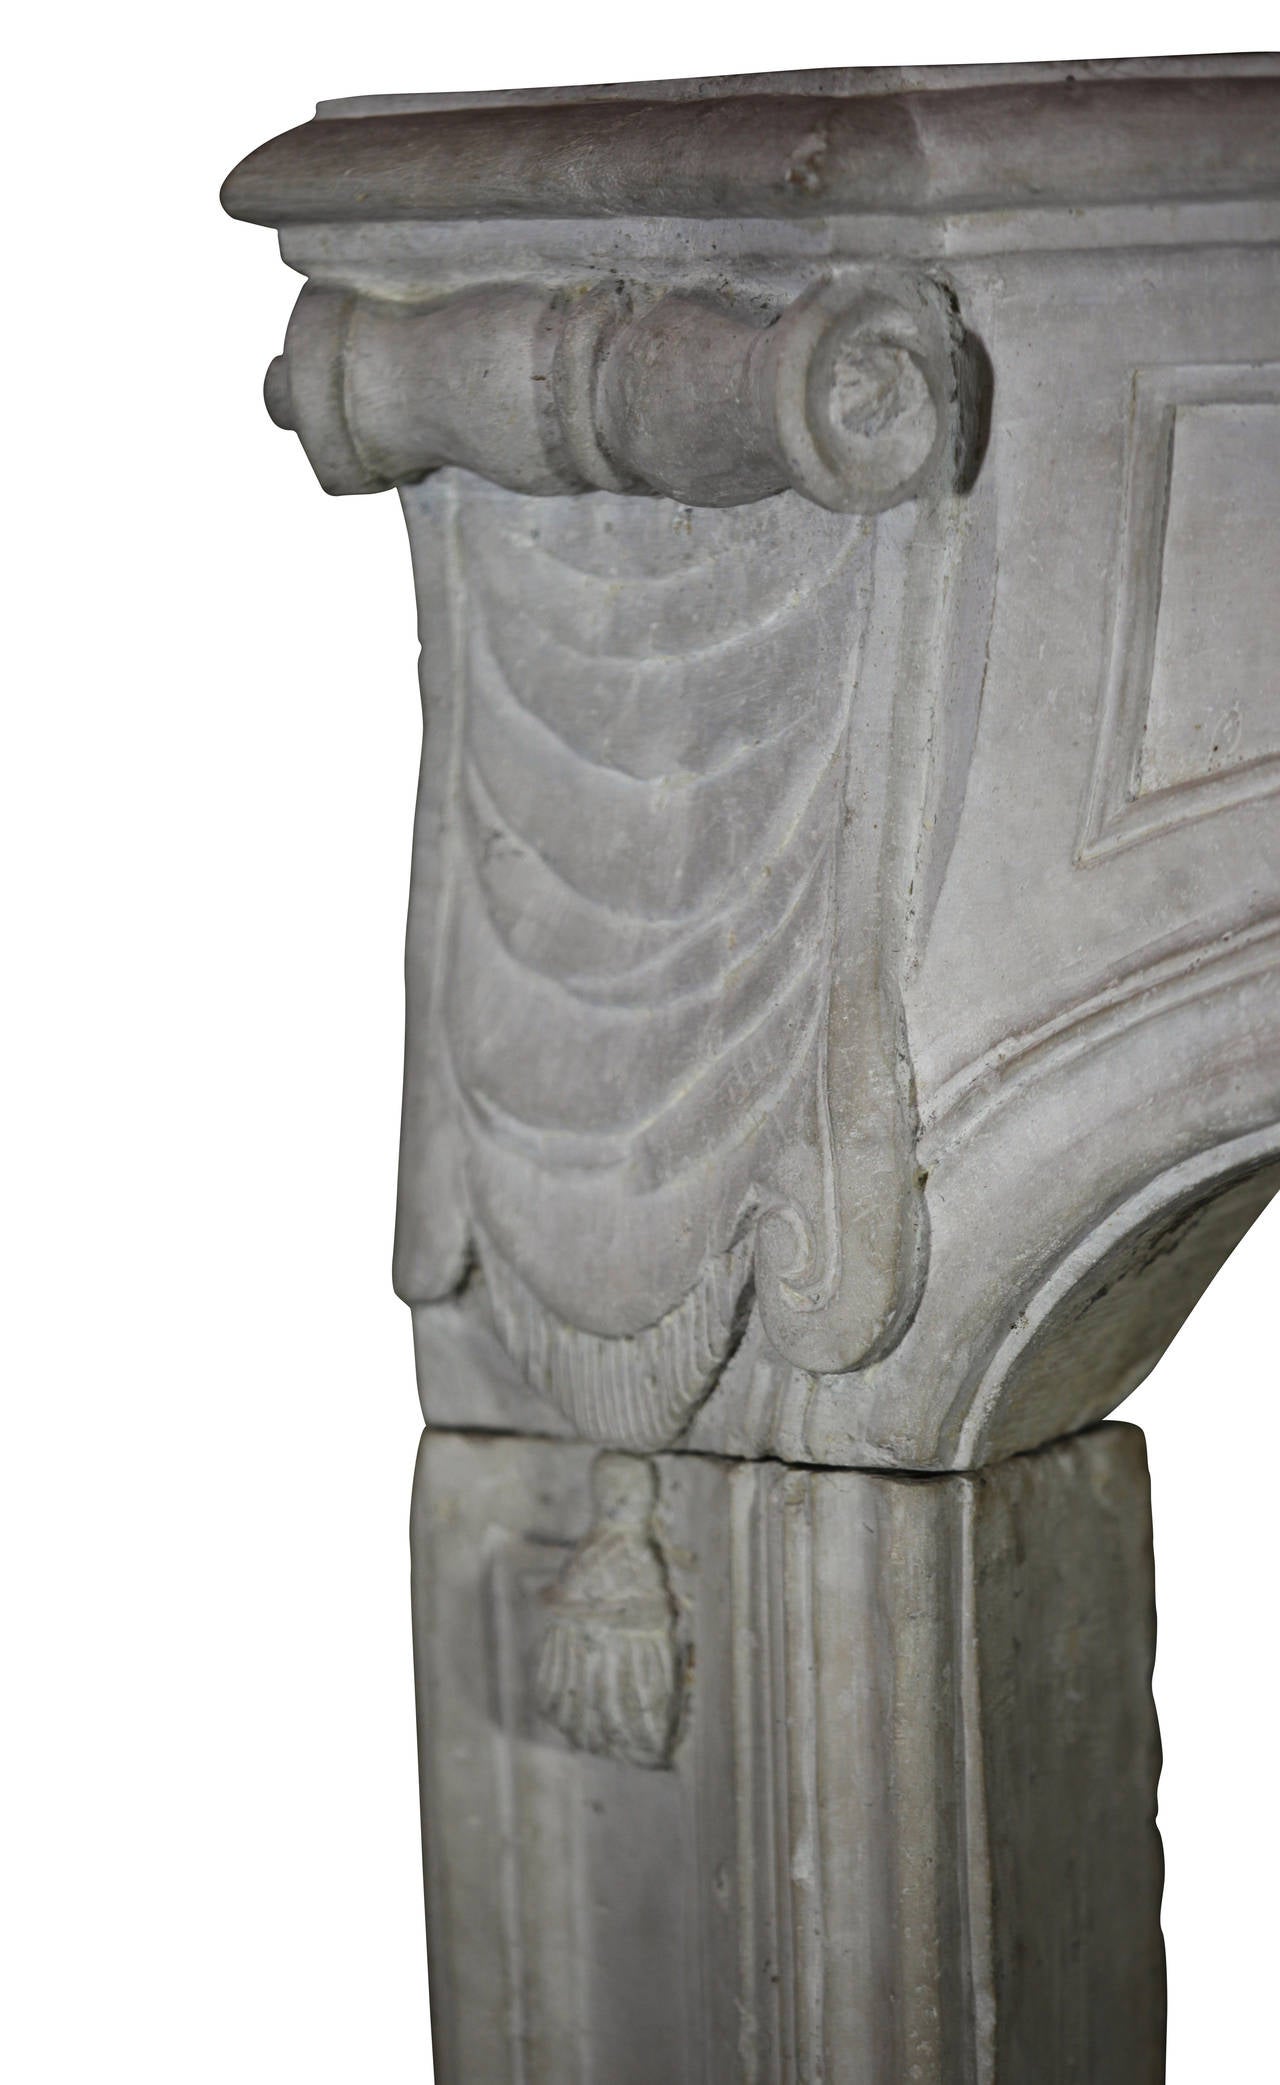 Original-Kaminschornstein aus dem 18. Jahrhundert, Regency-Periode. Es handelt sich um eine einzigartige Kamineinfassung aus Kalkstein. Auf der Vorderseite befinden sich schöne Schnitzereien mit Muscheln und Schriftrollen. Sehr einzigartiges Stück